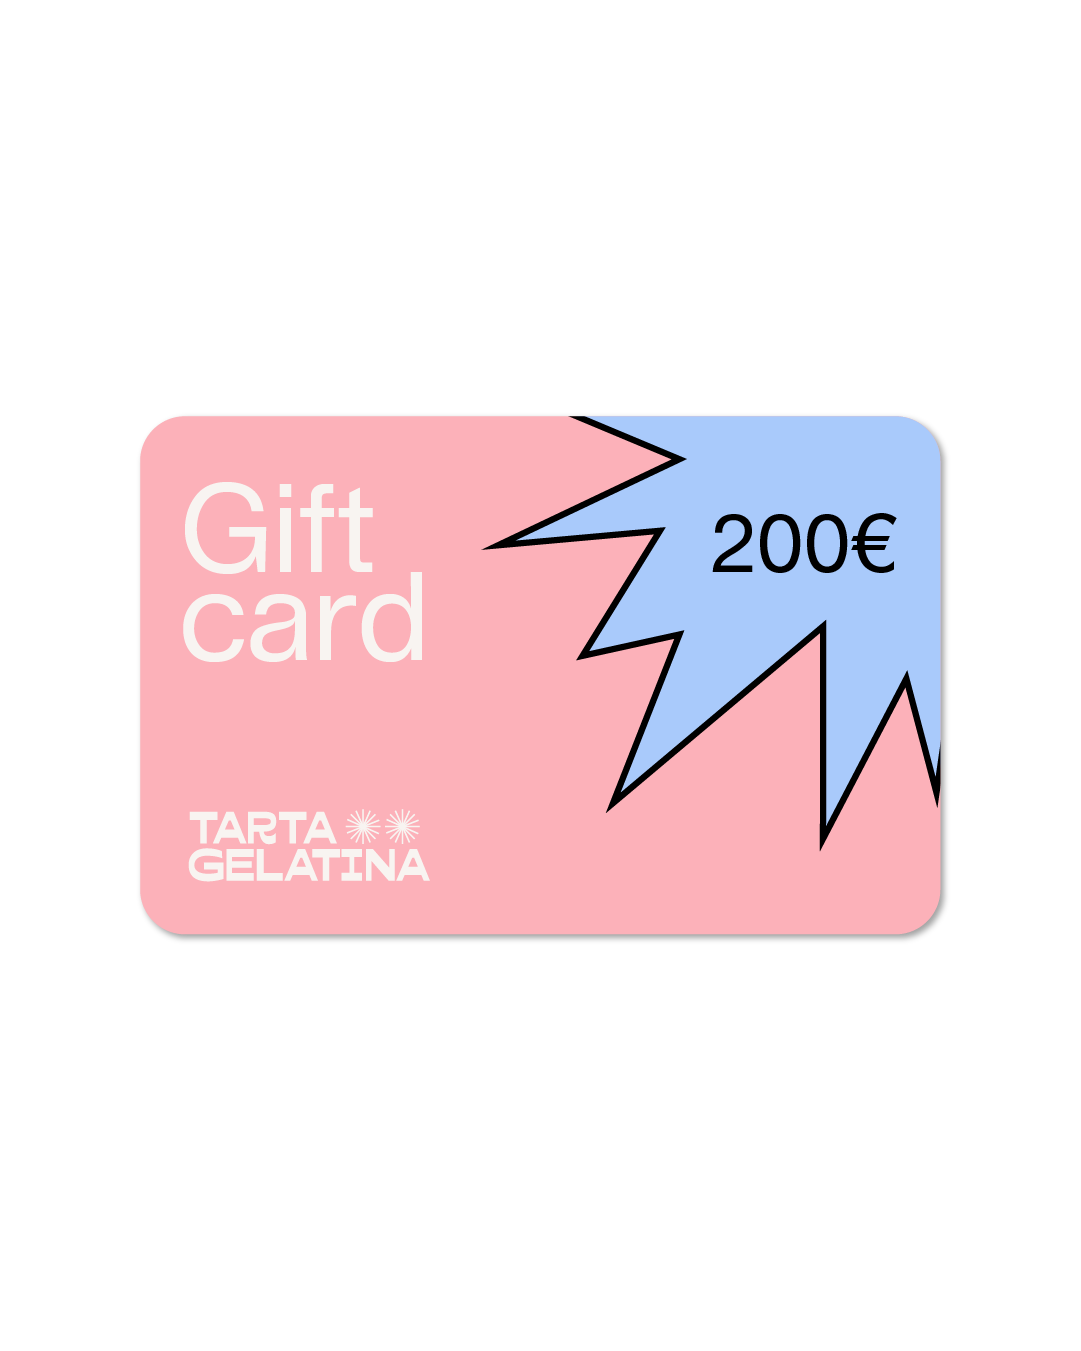 TARTA Gift Card - TARTA GELATINA